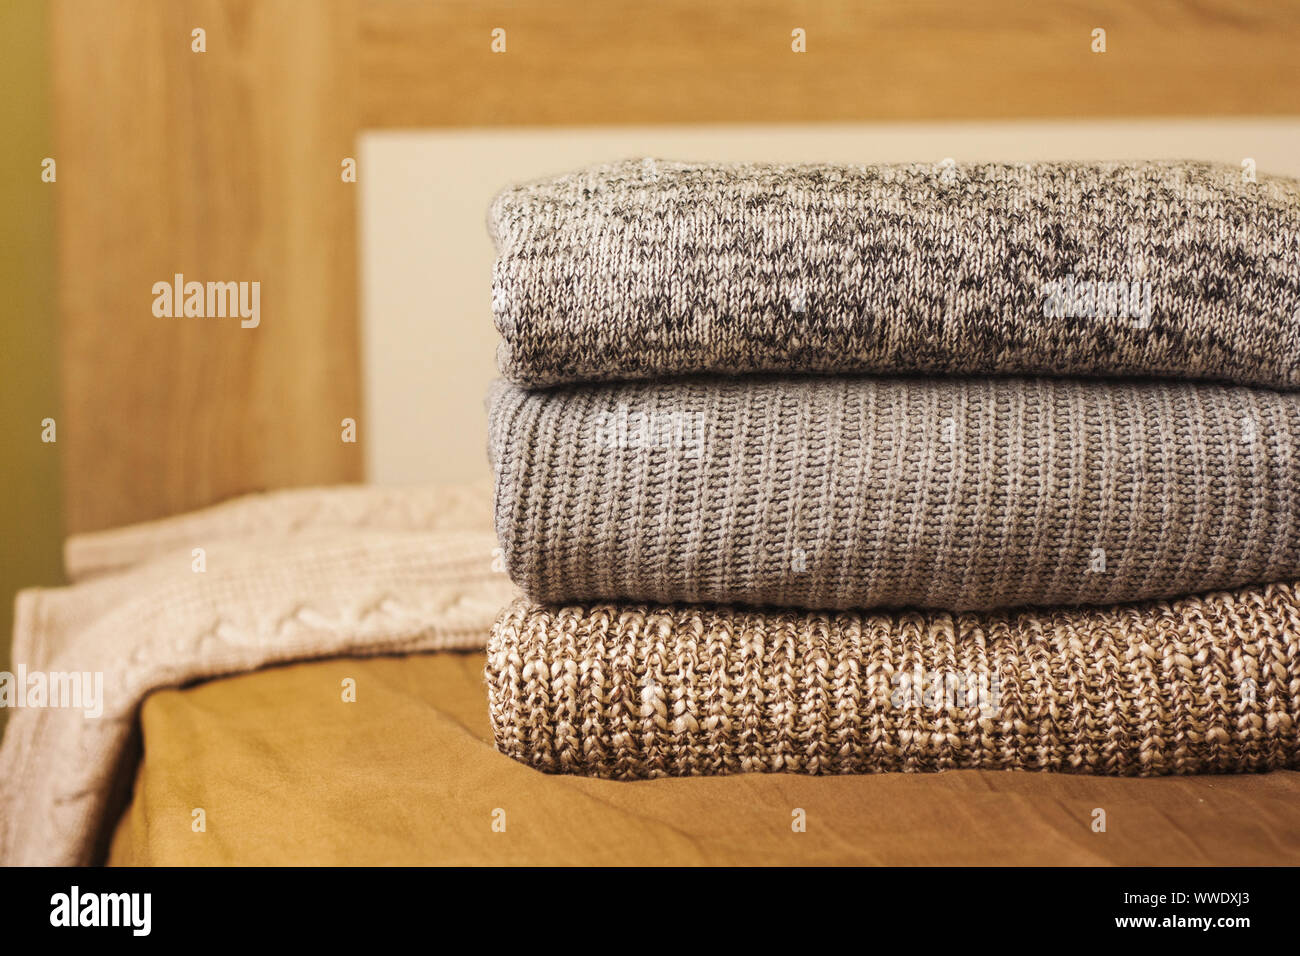 Ein Stapel aus Gewirken Winter oder Herbst Pullover auf dem Holz Bett. Warme, bequeme Kleidung. Stockfoto